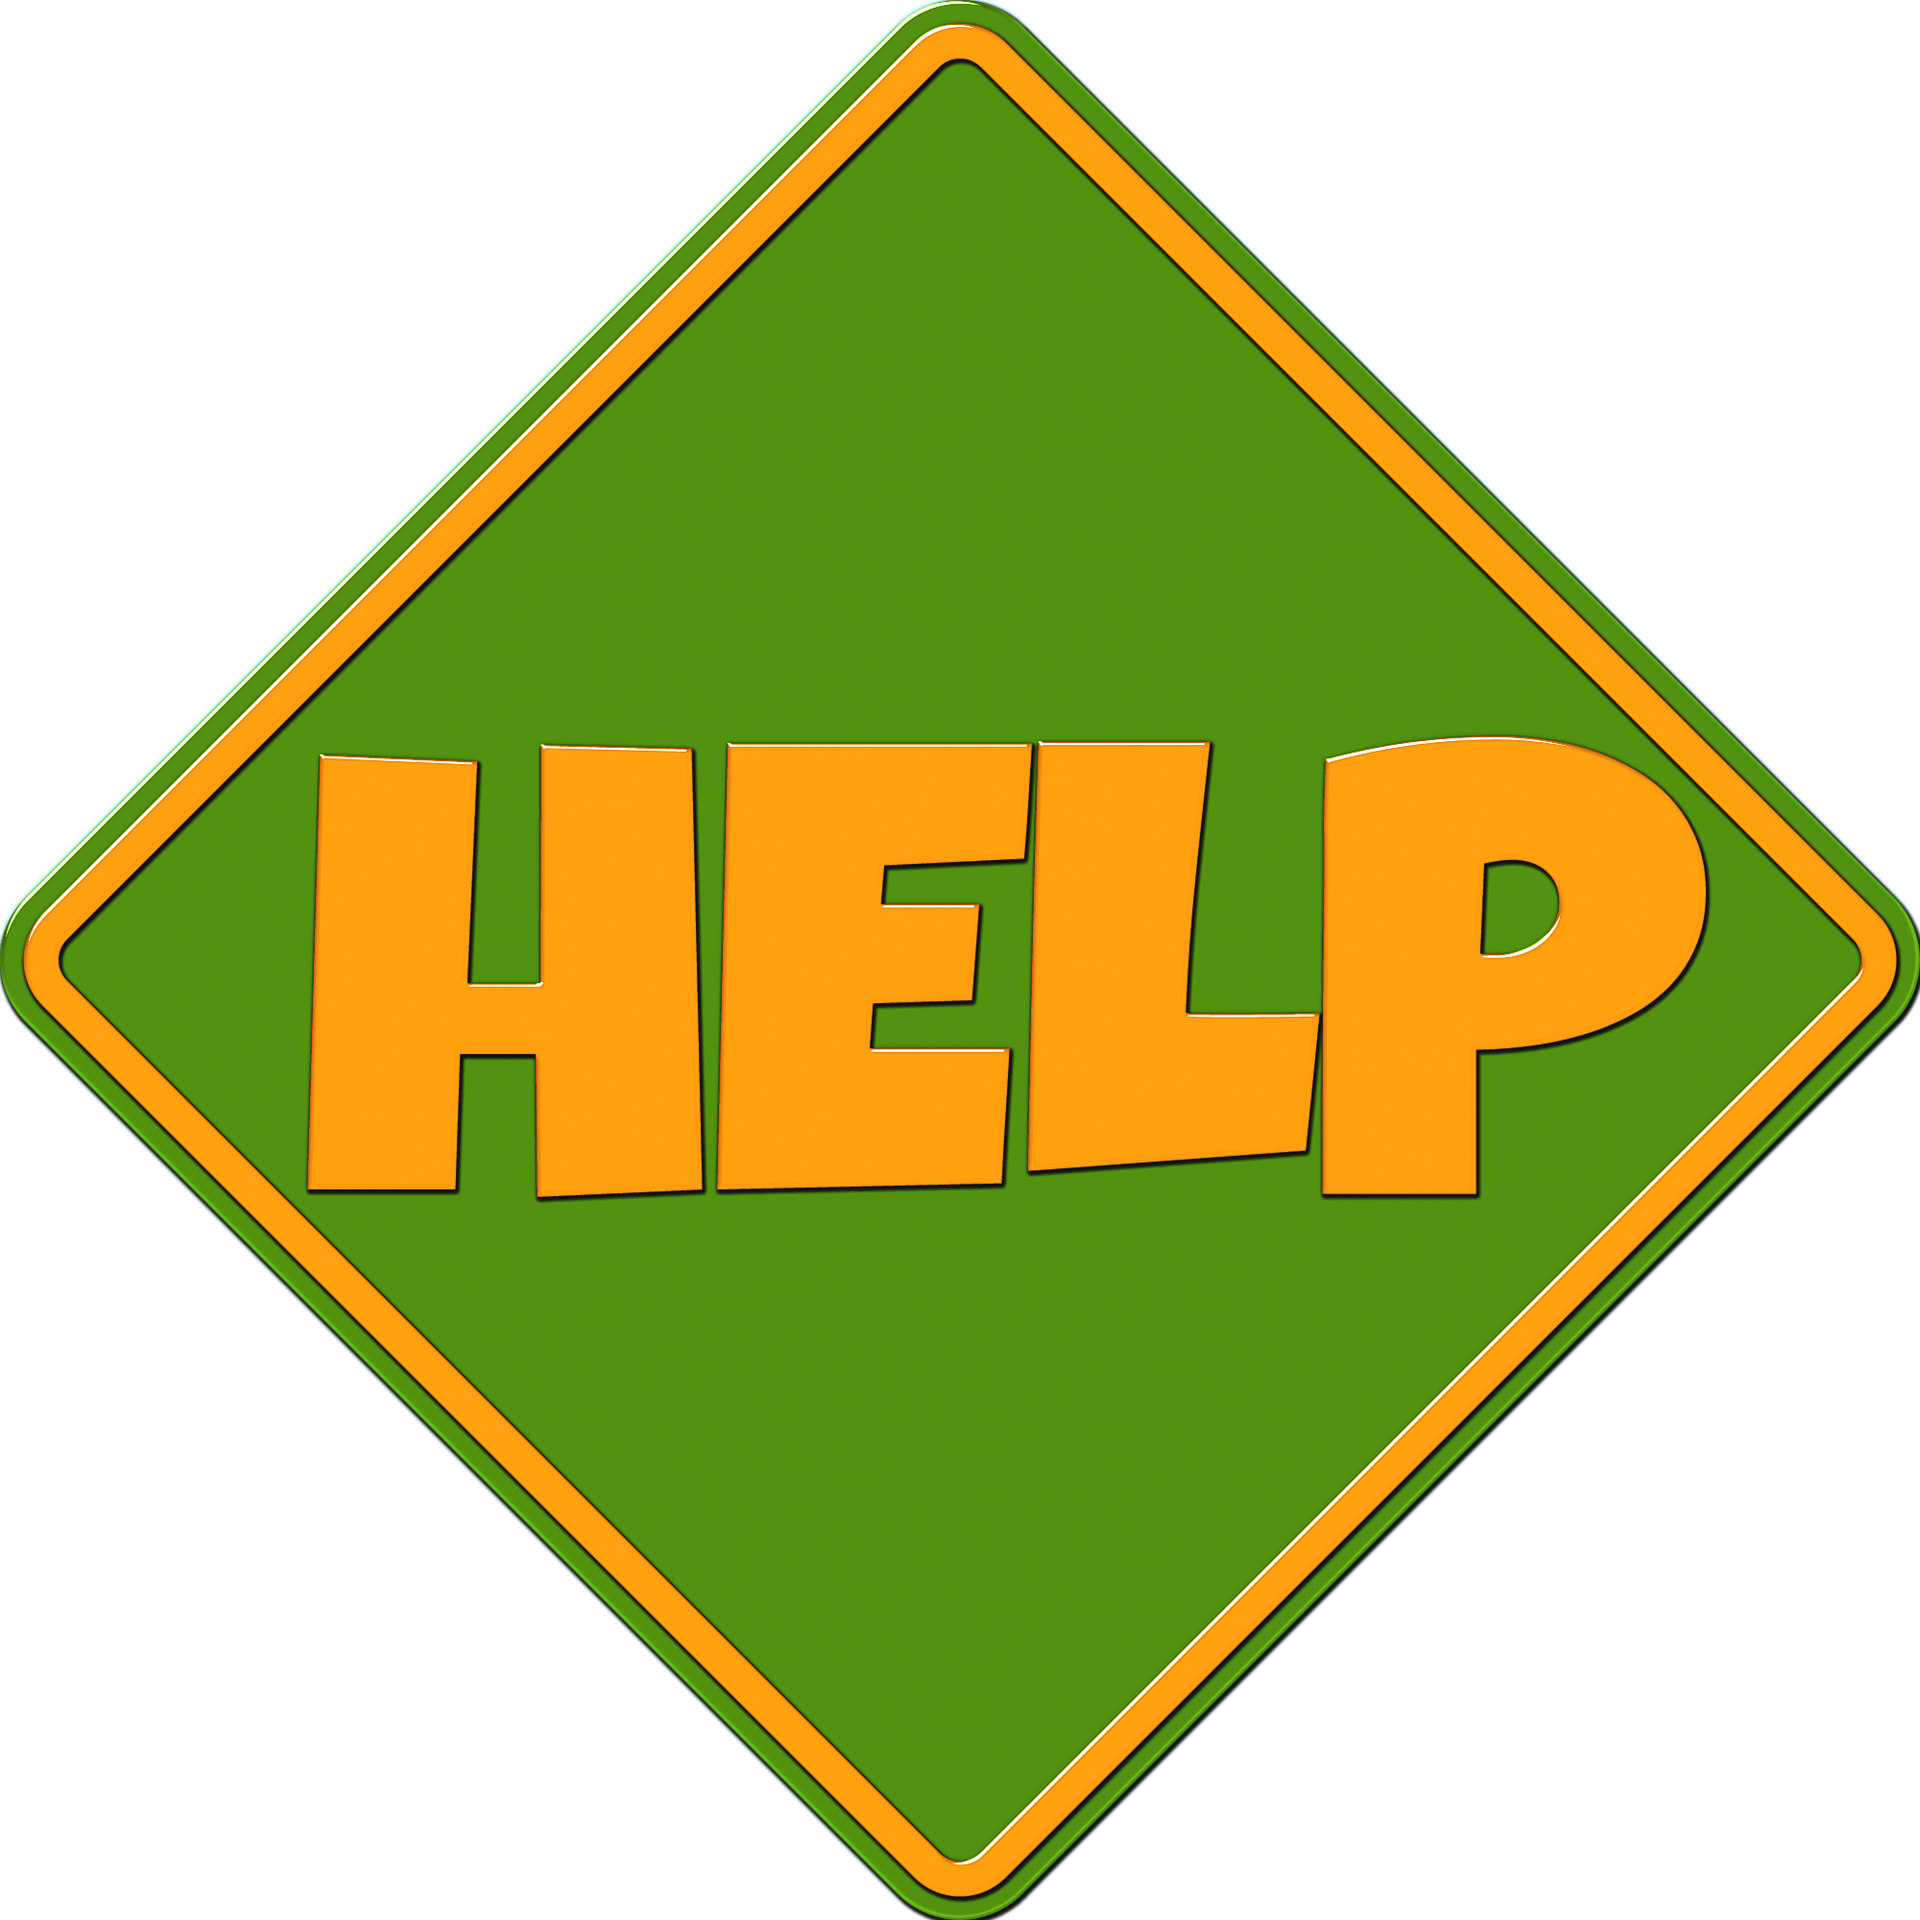 Imagen con fondo verde donde hay escrita la palabra HELP en naranja